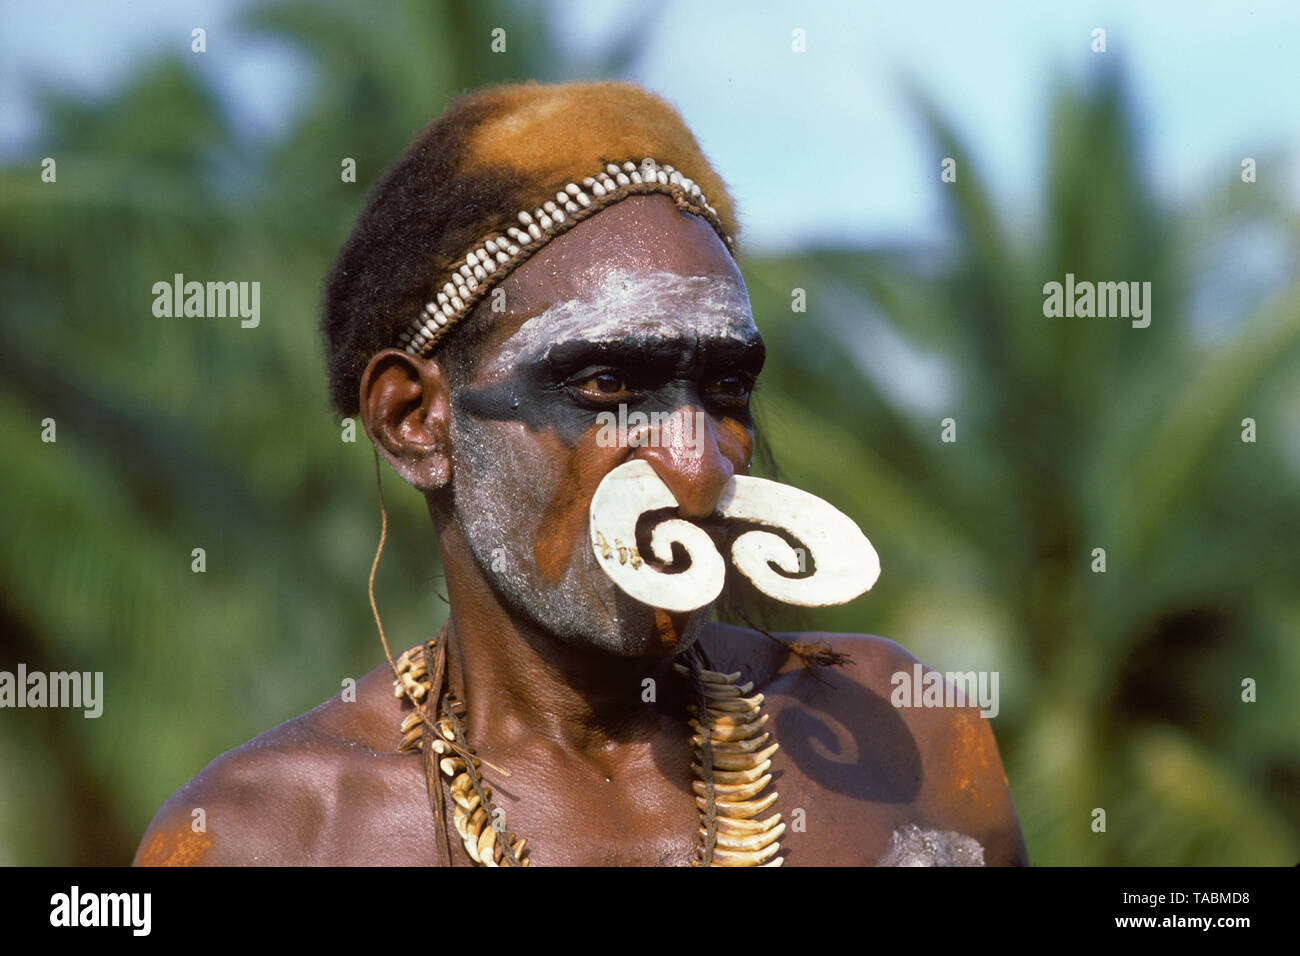 Asmat persone: gruppi etnici che vivono nella provincia di Papua di Indonesia, lungo il mare Arafura. Asmat uomo, Agats-Sjuru. Fotografia scattata da Francois Goh Foto Stock